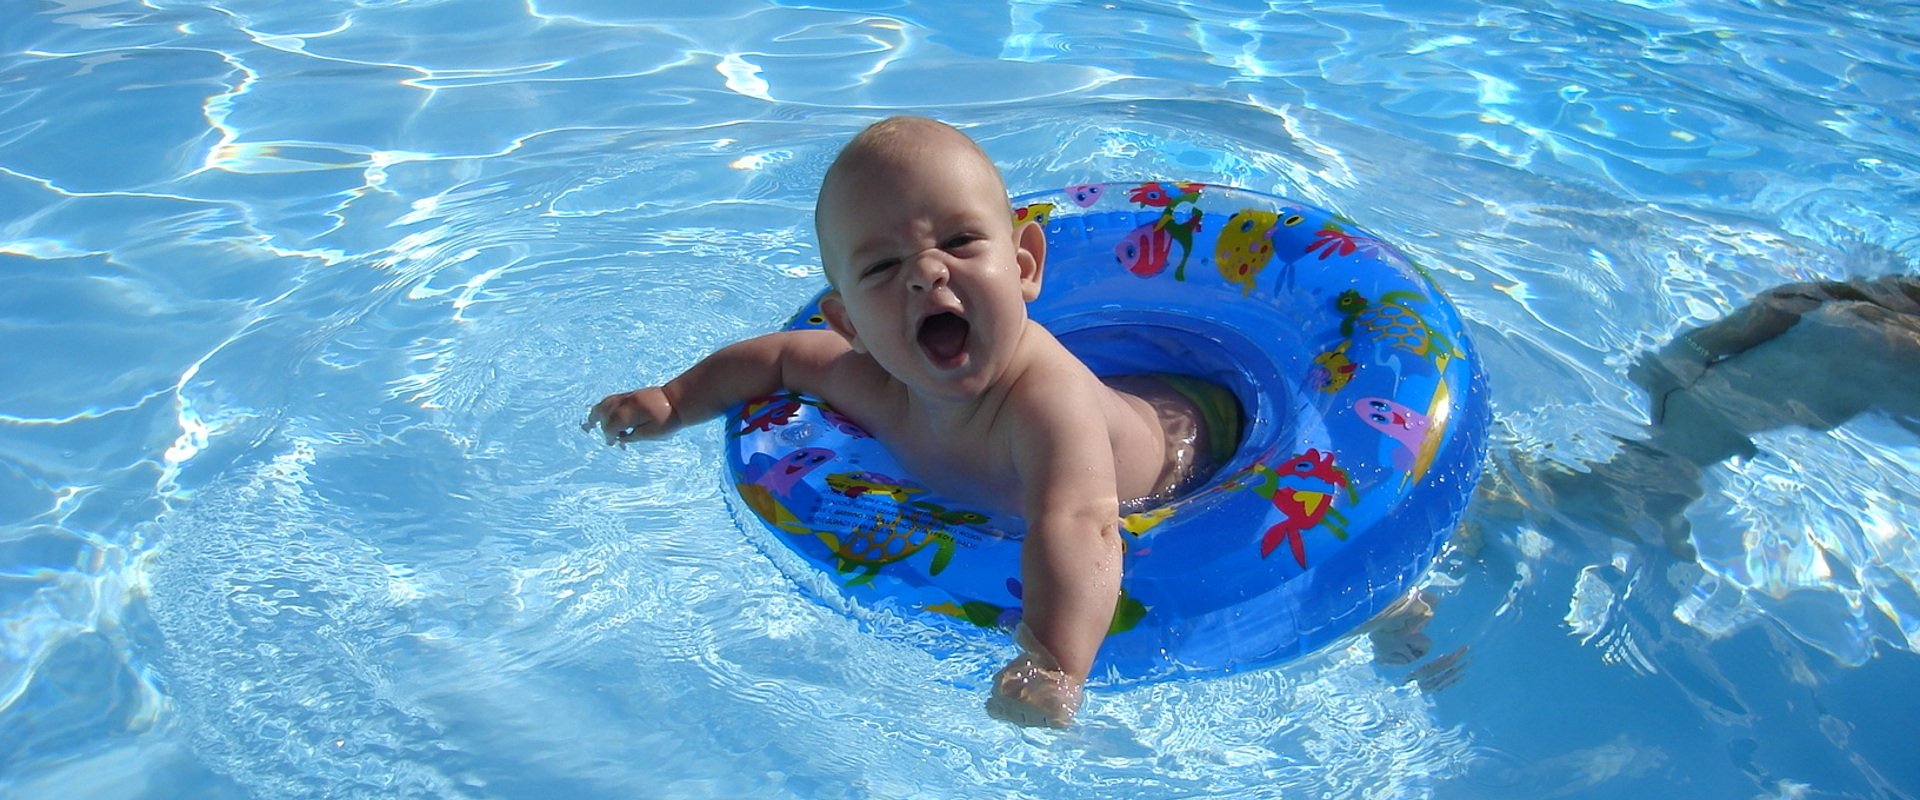 Мальчик купается в бассейне. Дети в бассейне. Дети плавают в бассейне. Дети на море. Дети купаются в бассейне.